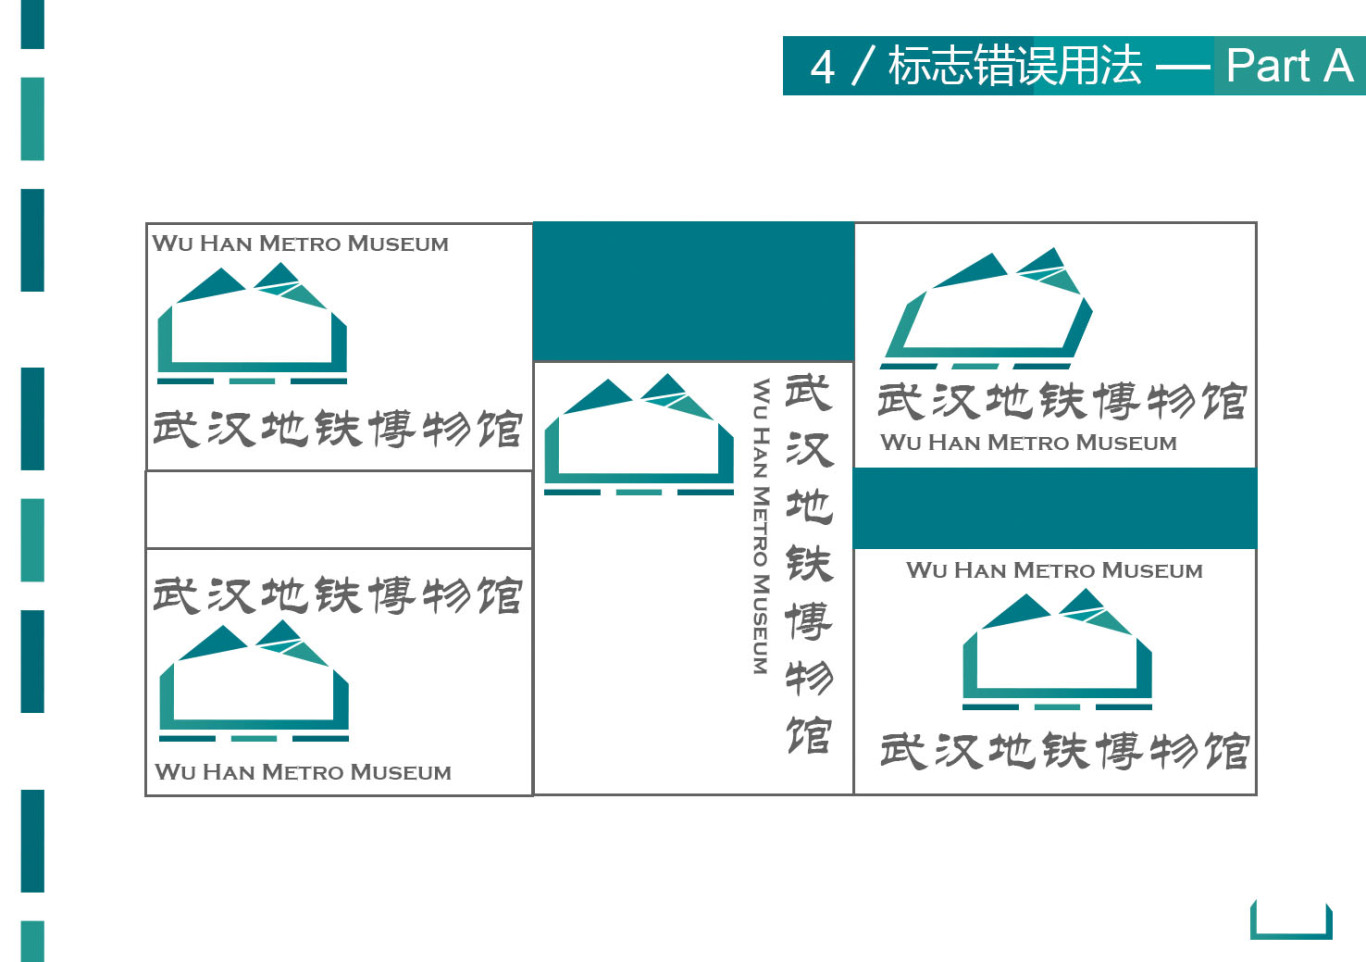 武汉地铁博物馆视觉识别设计图1